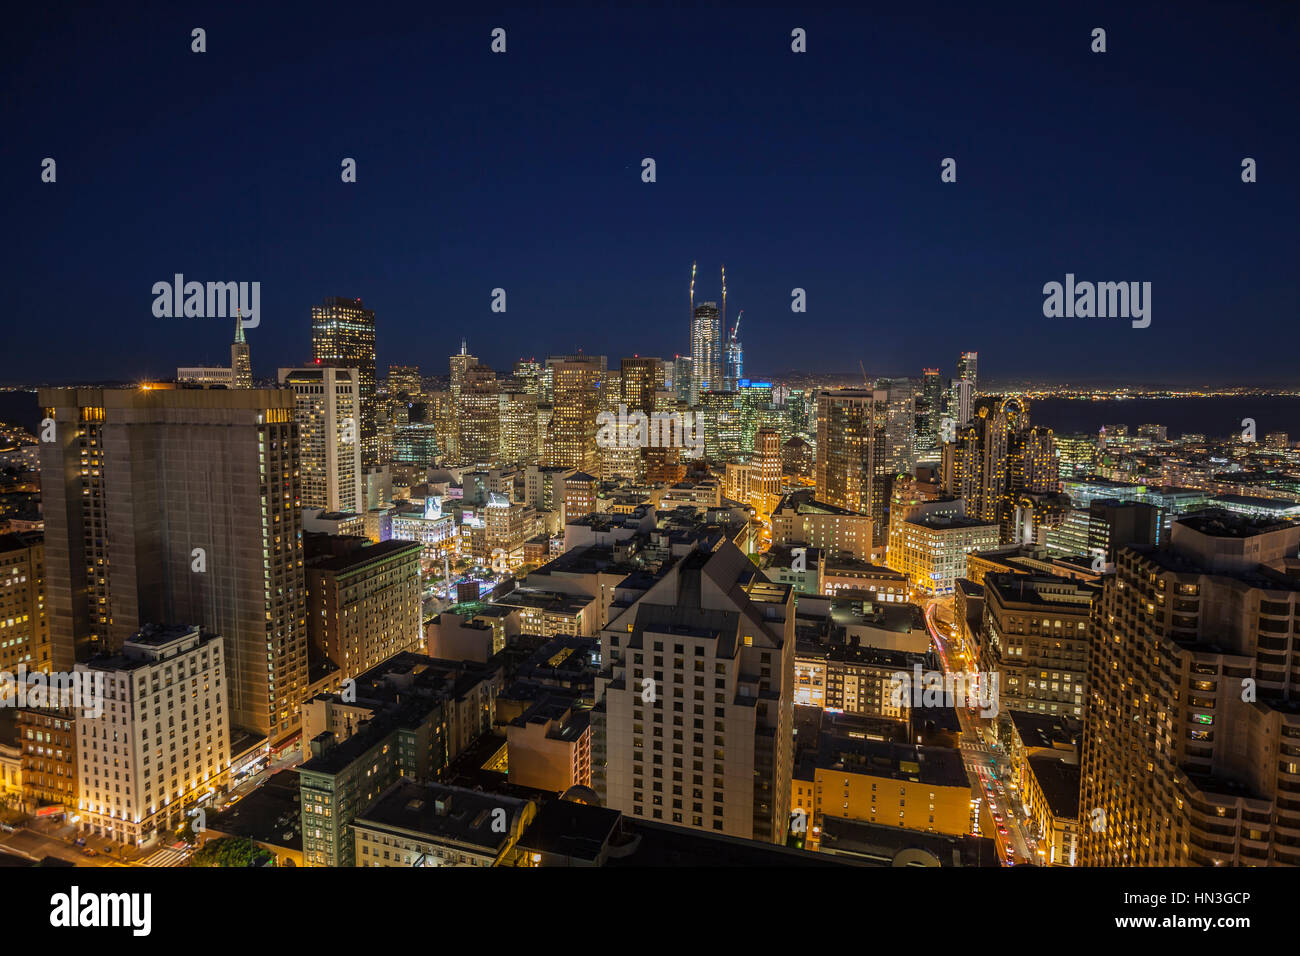 San Francisco, Kalifornien, USA - 13. Januar 2017: Nacht Skyline Blick auf Straßen und Türme in der Innenstadt von San Francisco. Stockfoto